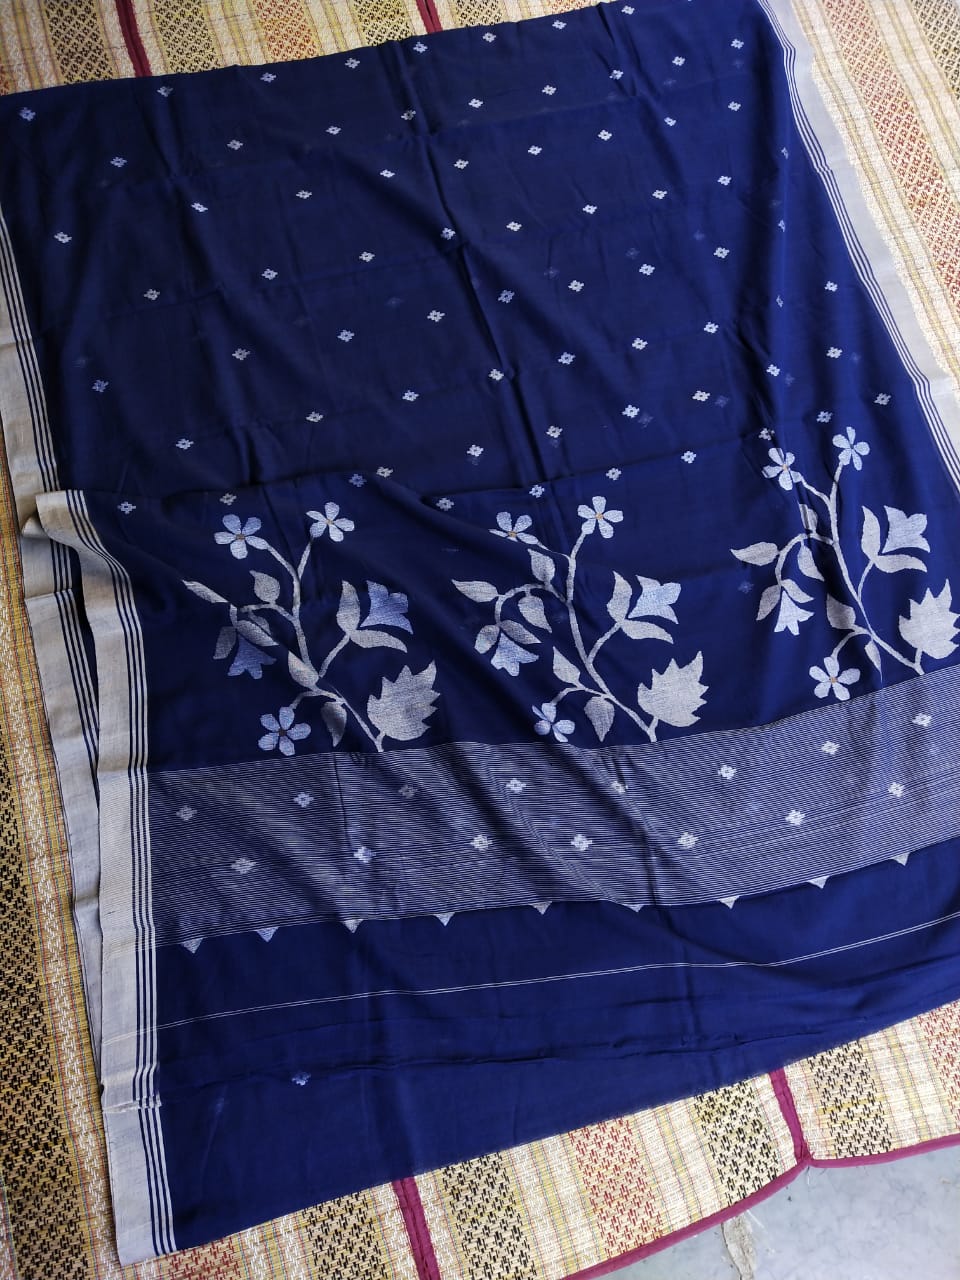 Pure Cotton jamdani Saree Without Blouse . ( Length- 6.3 meter )